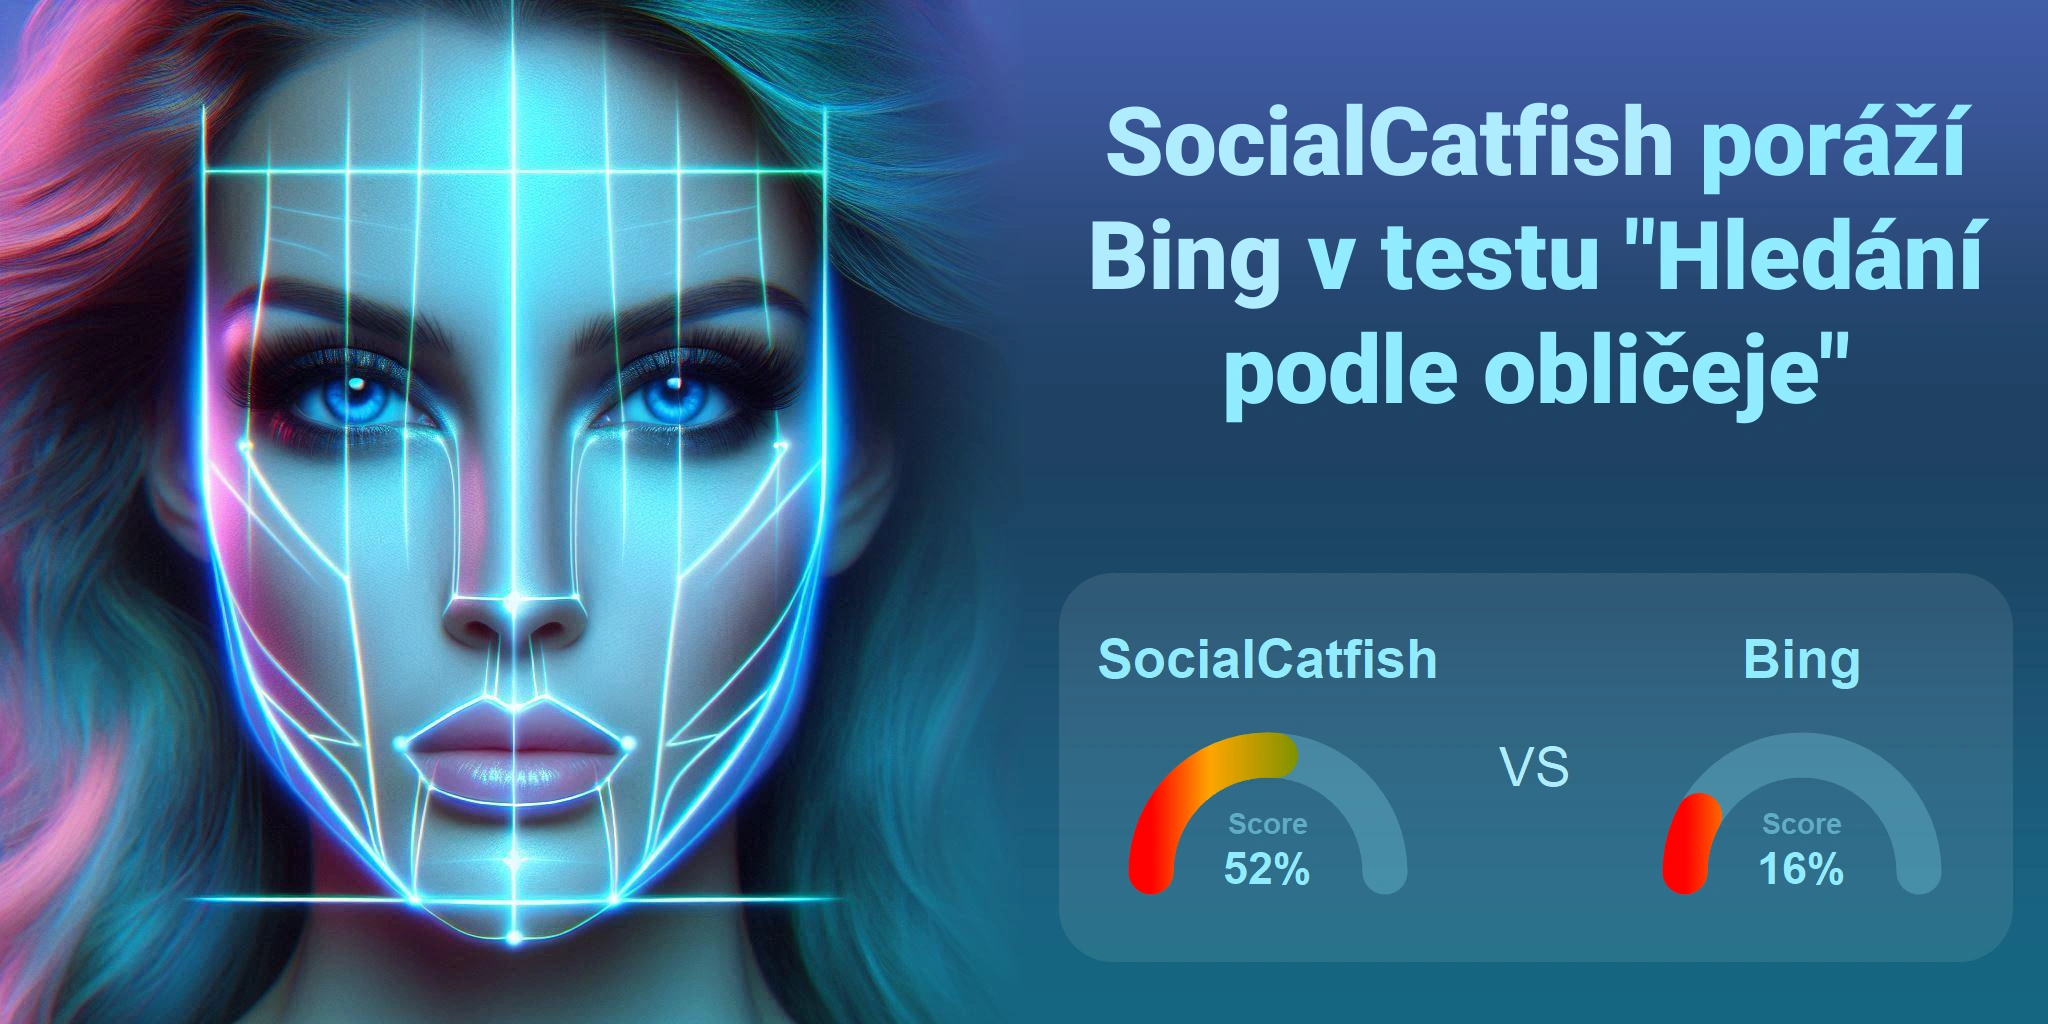 Který je lepší pro vyhledávání obličejů: <br>Bing nebo SocialCatfish?